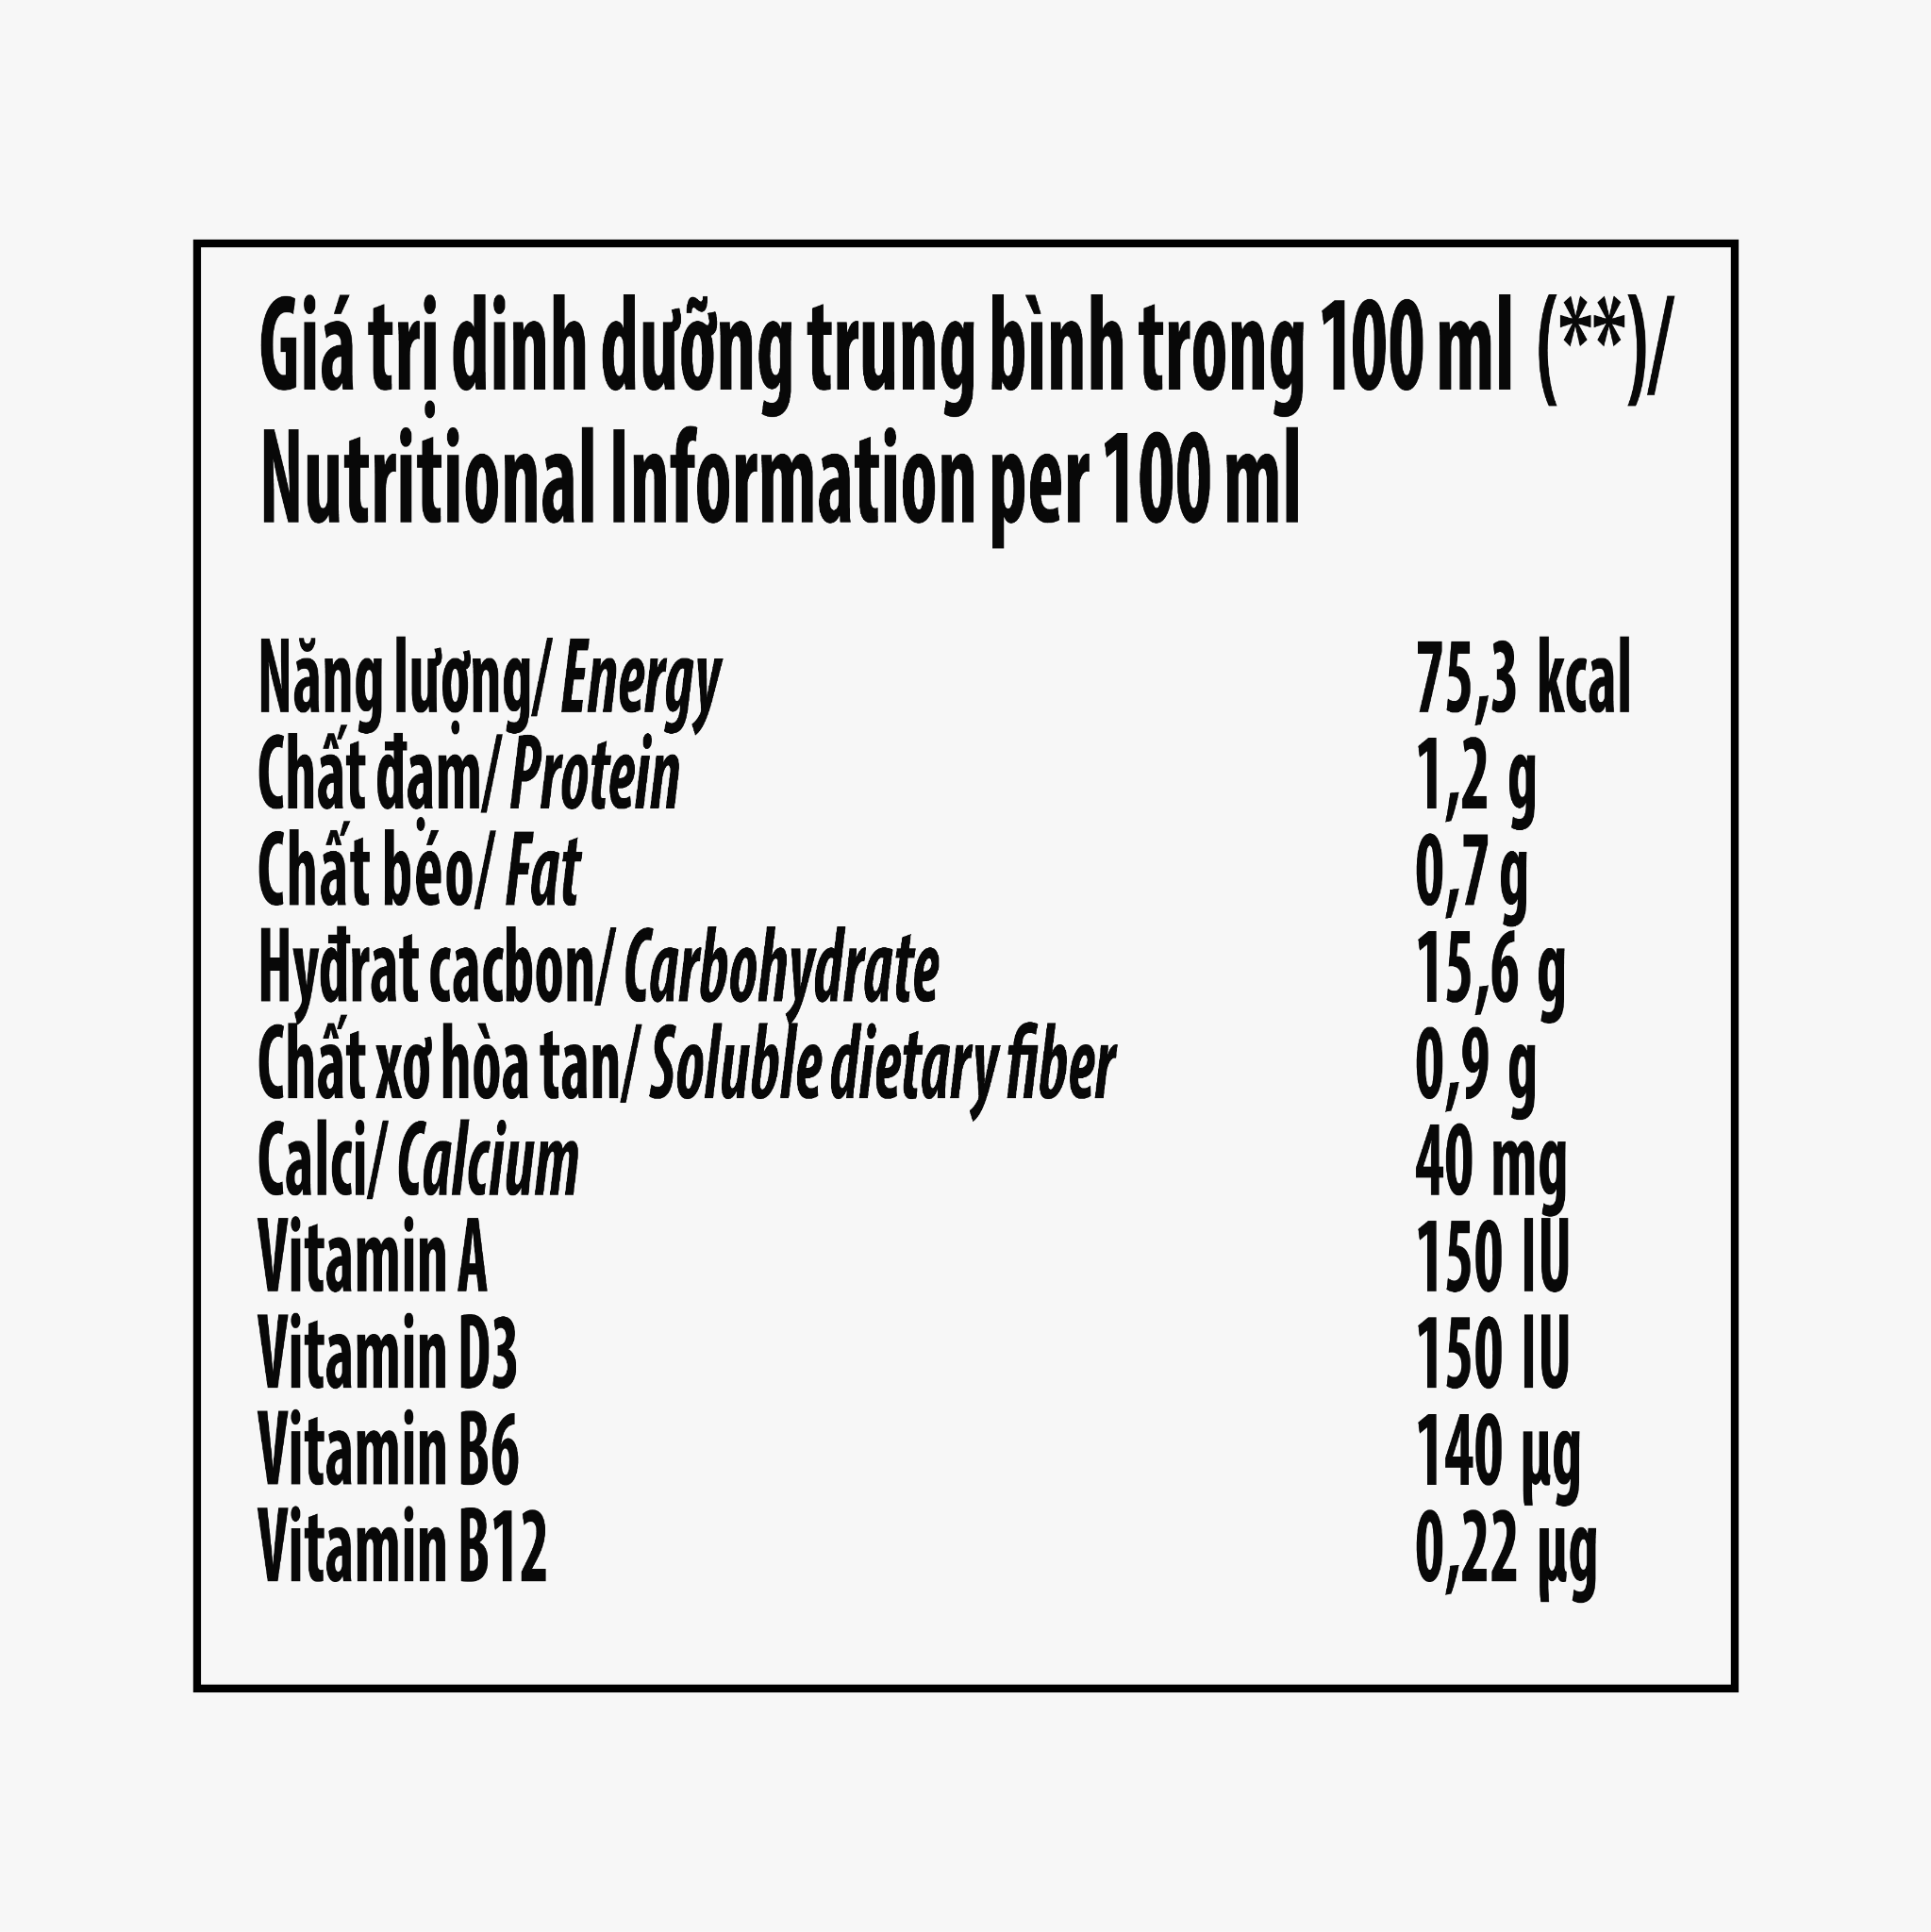 Sữa Chua Uống Vinamilk Susu Hương Cam - Thùng 48 Chai x 80ml